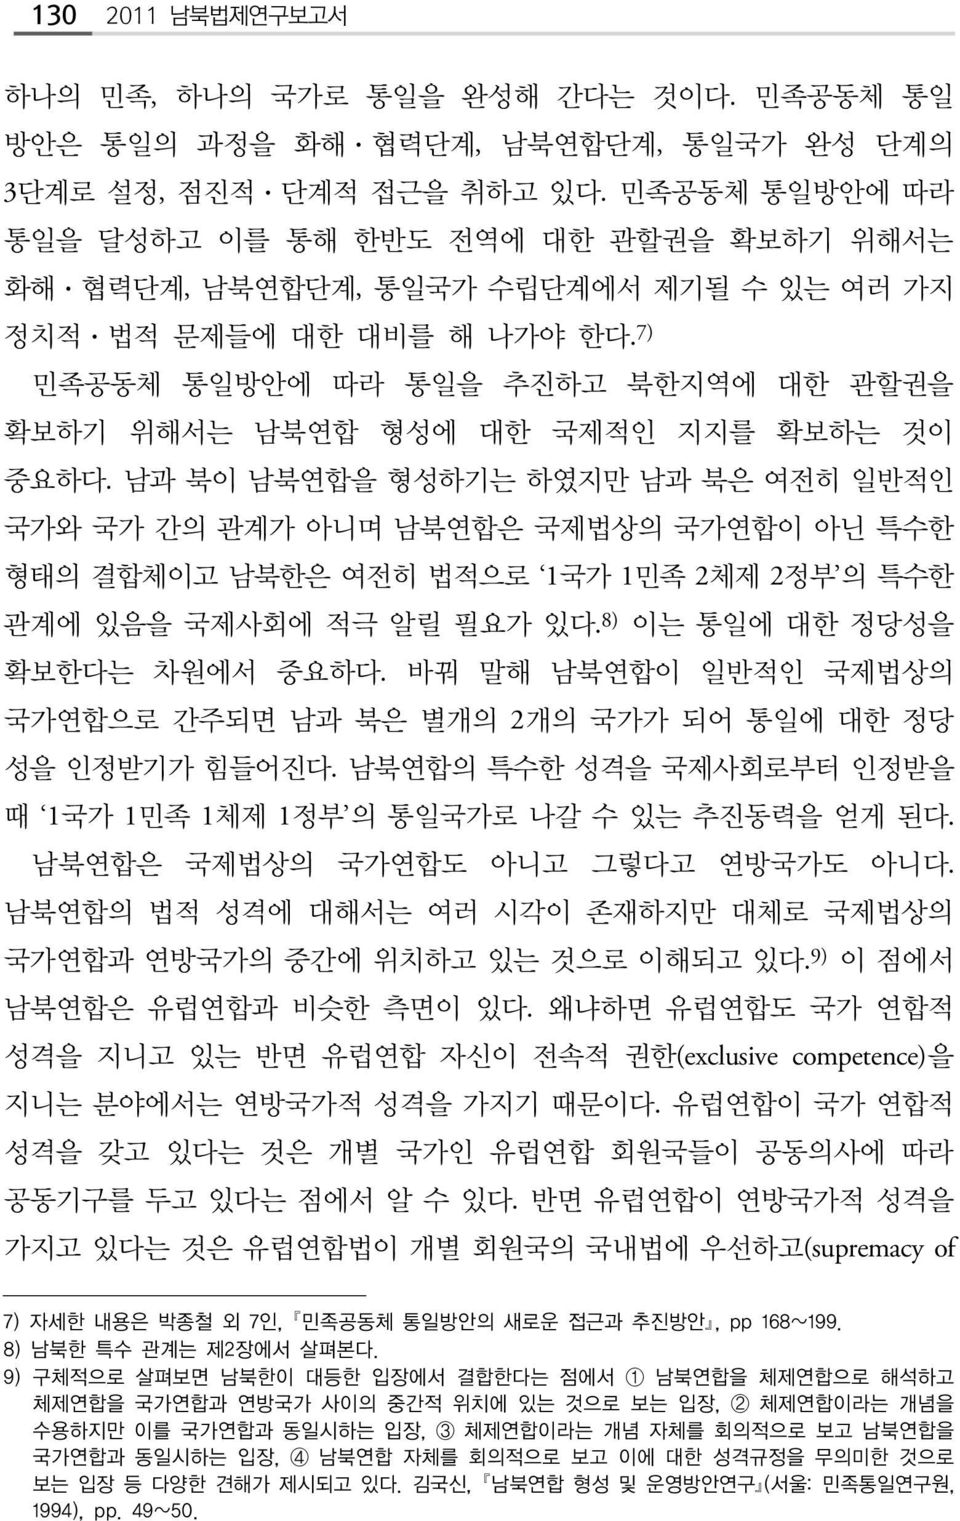 7) 민족공동체 통일방안에 따라 통일을 추진하고 북한지역에 대한 관할권을 확보하기 위해서는 남북연합 형성에 대한 국제적인 지지를 확보하는 것이 중요하다.